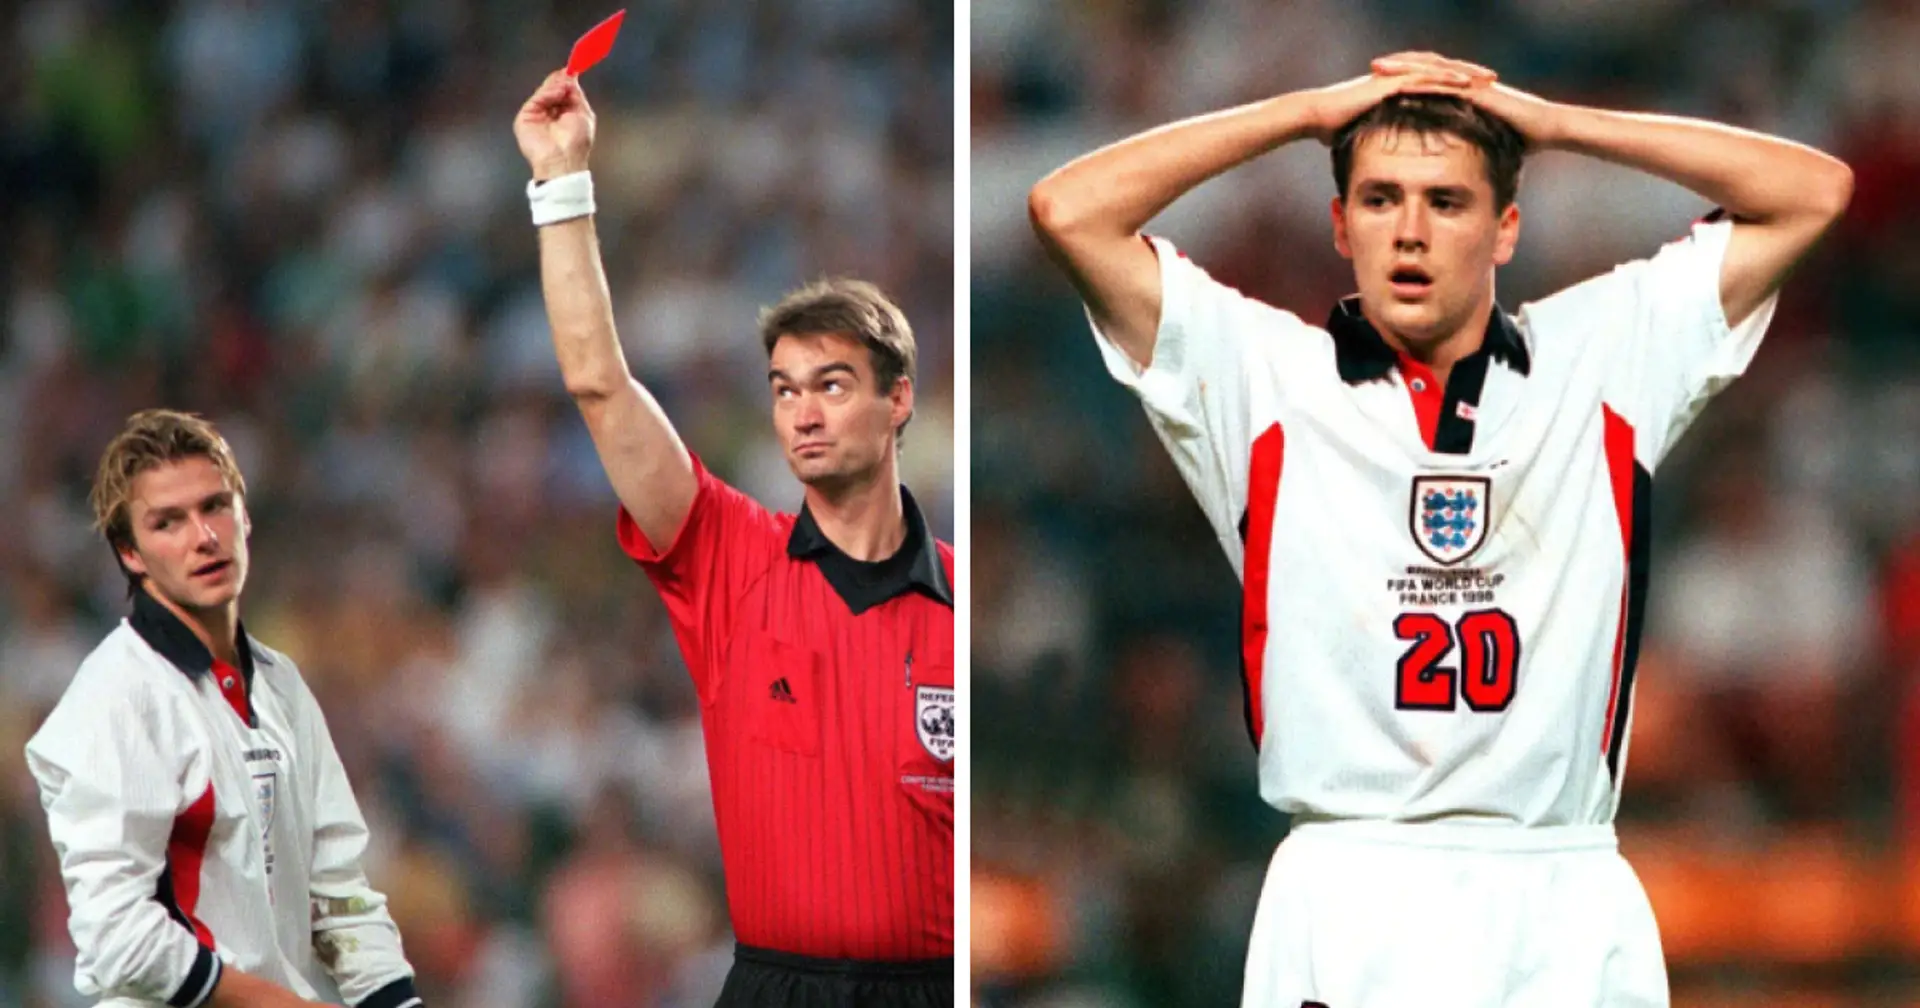 "Es gab nichts über ihn zu sagen": Michael Owen über Beckhams berüchtigte rote Karte